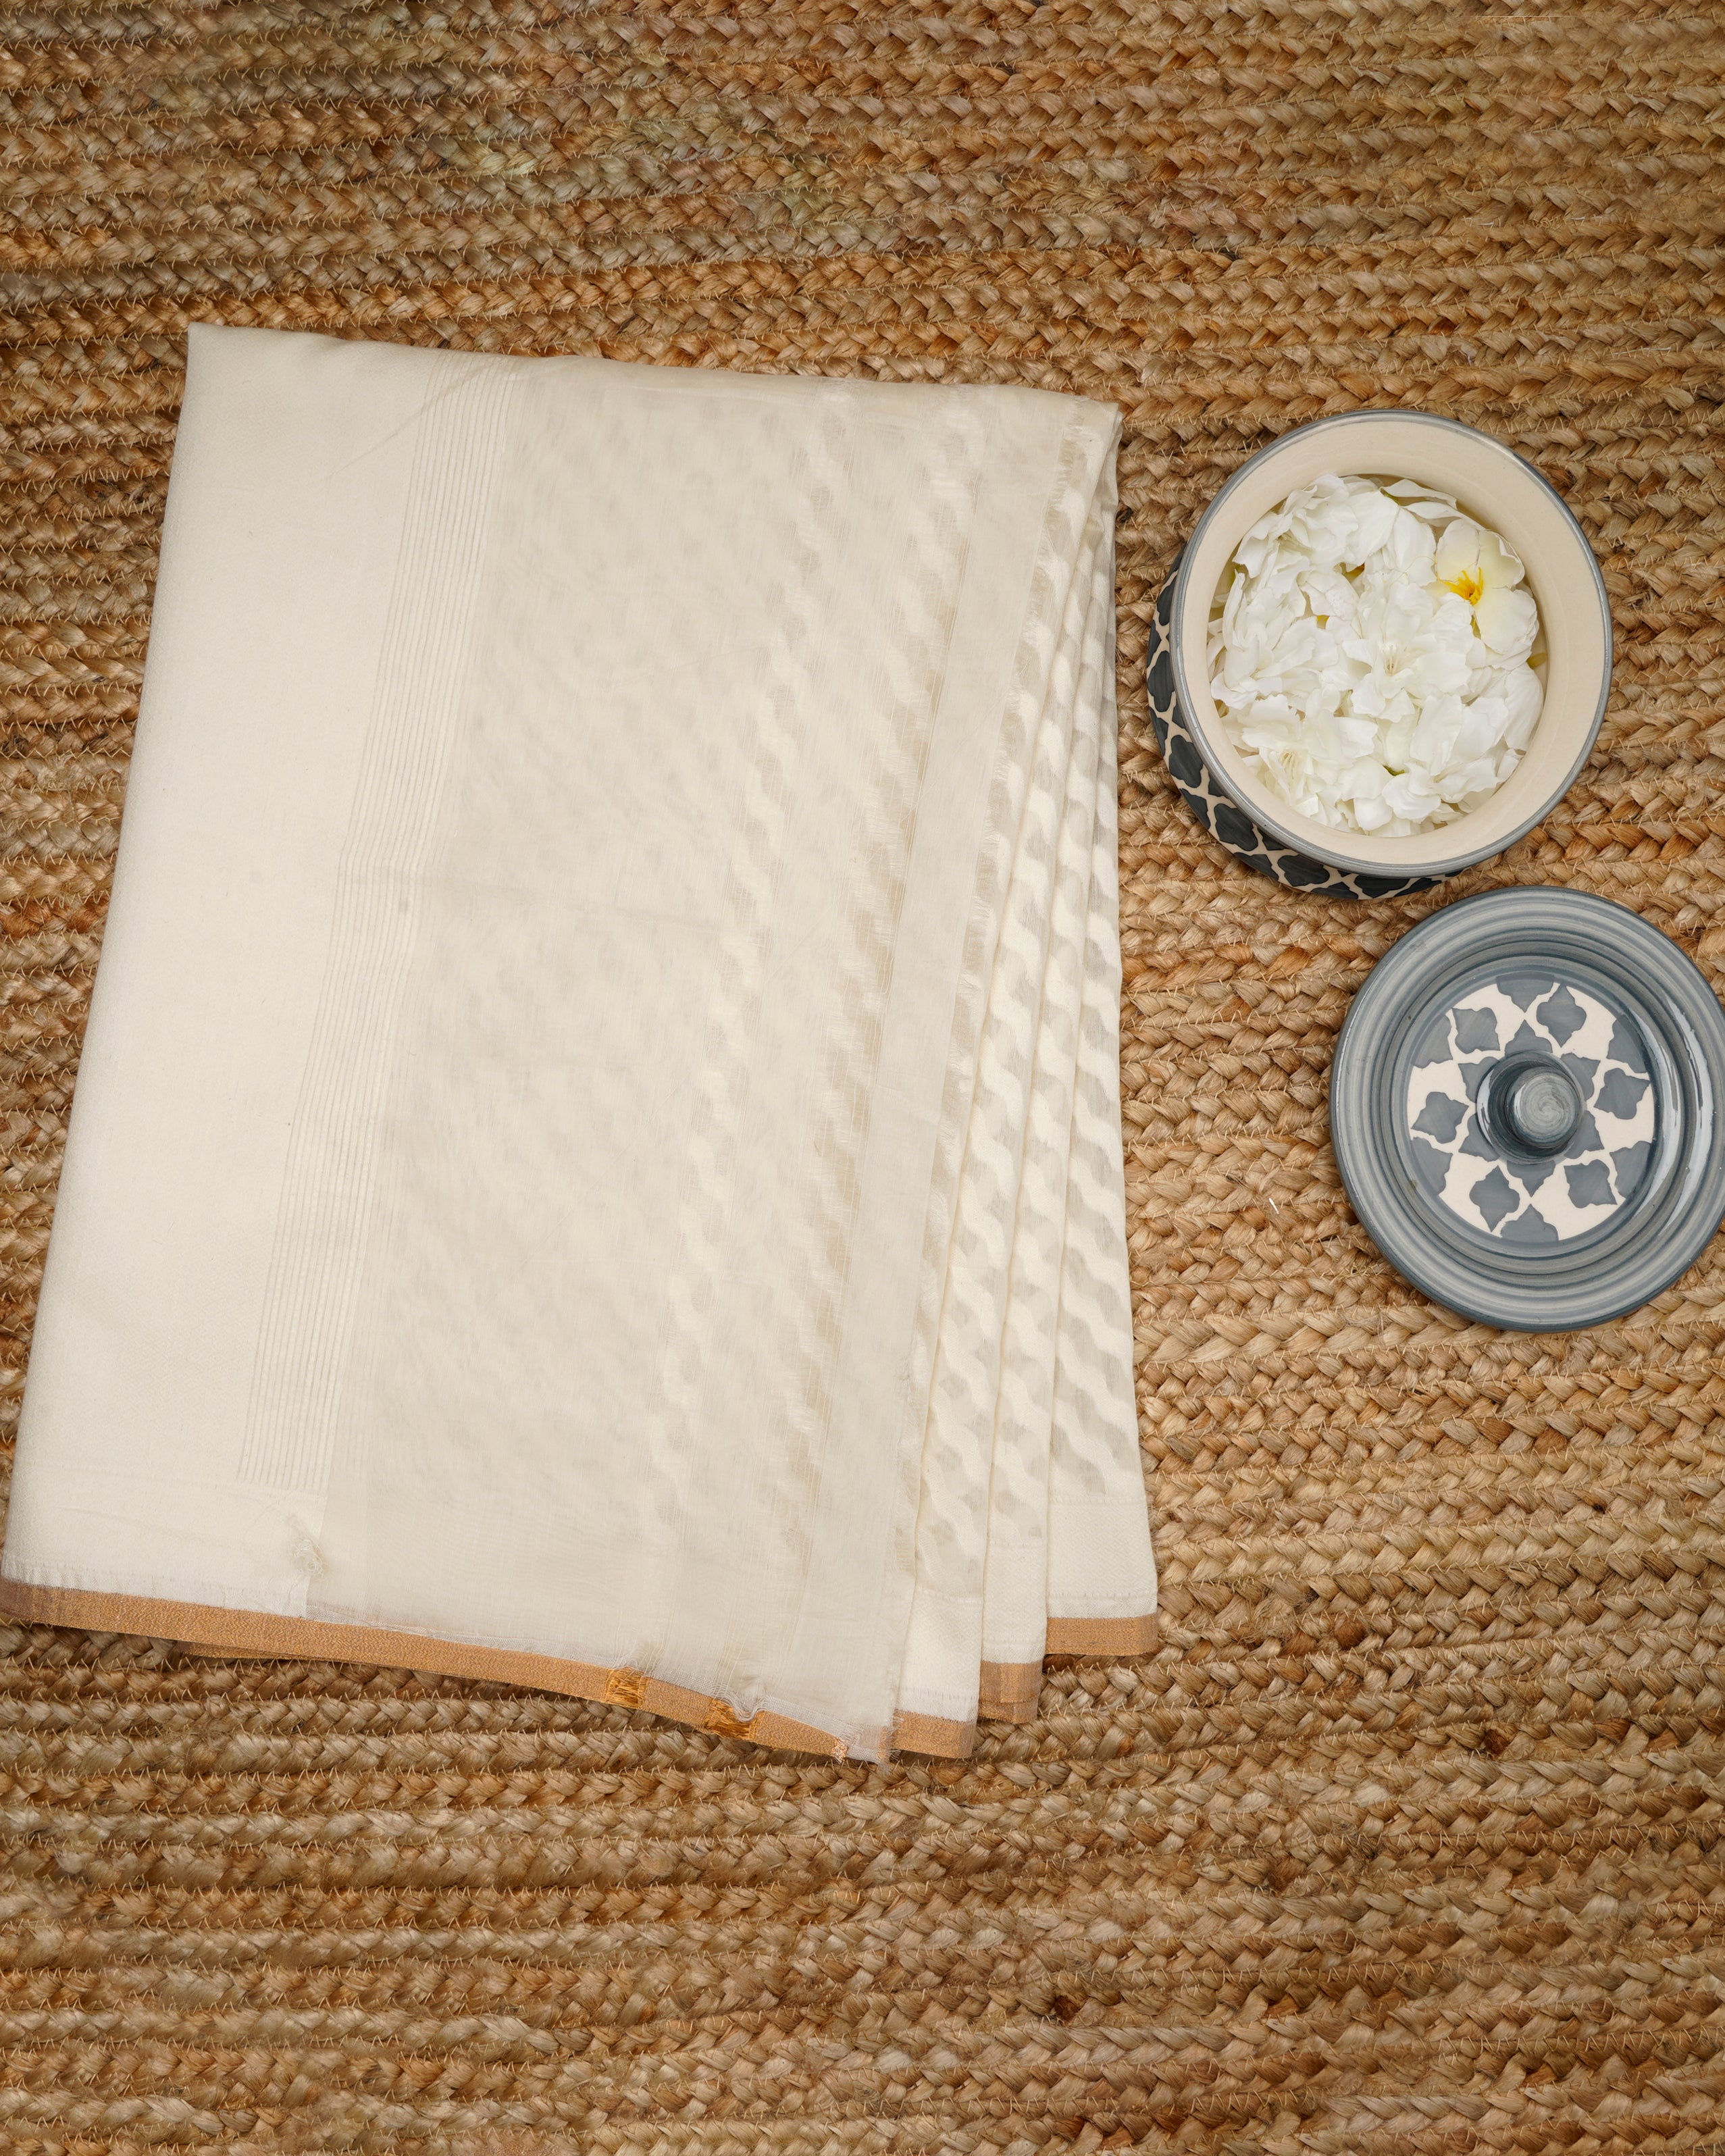 Off White Color Handwoven Jacquard Cotton Silk Dupatta with Zari Border